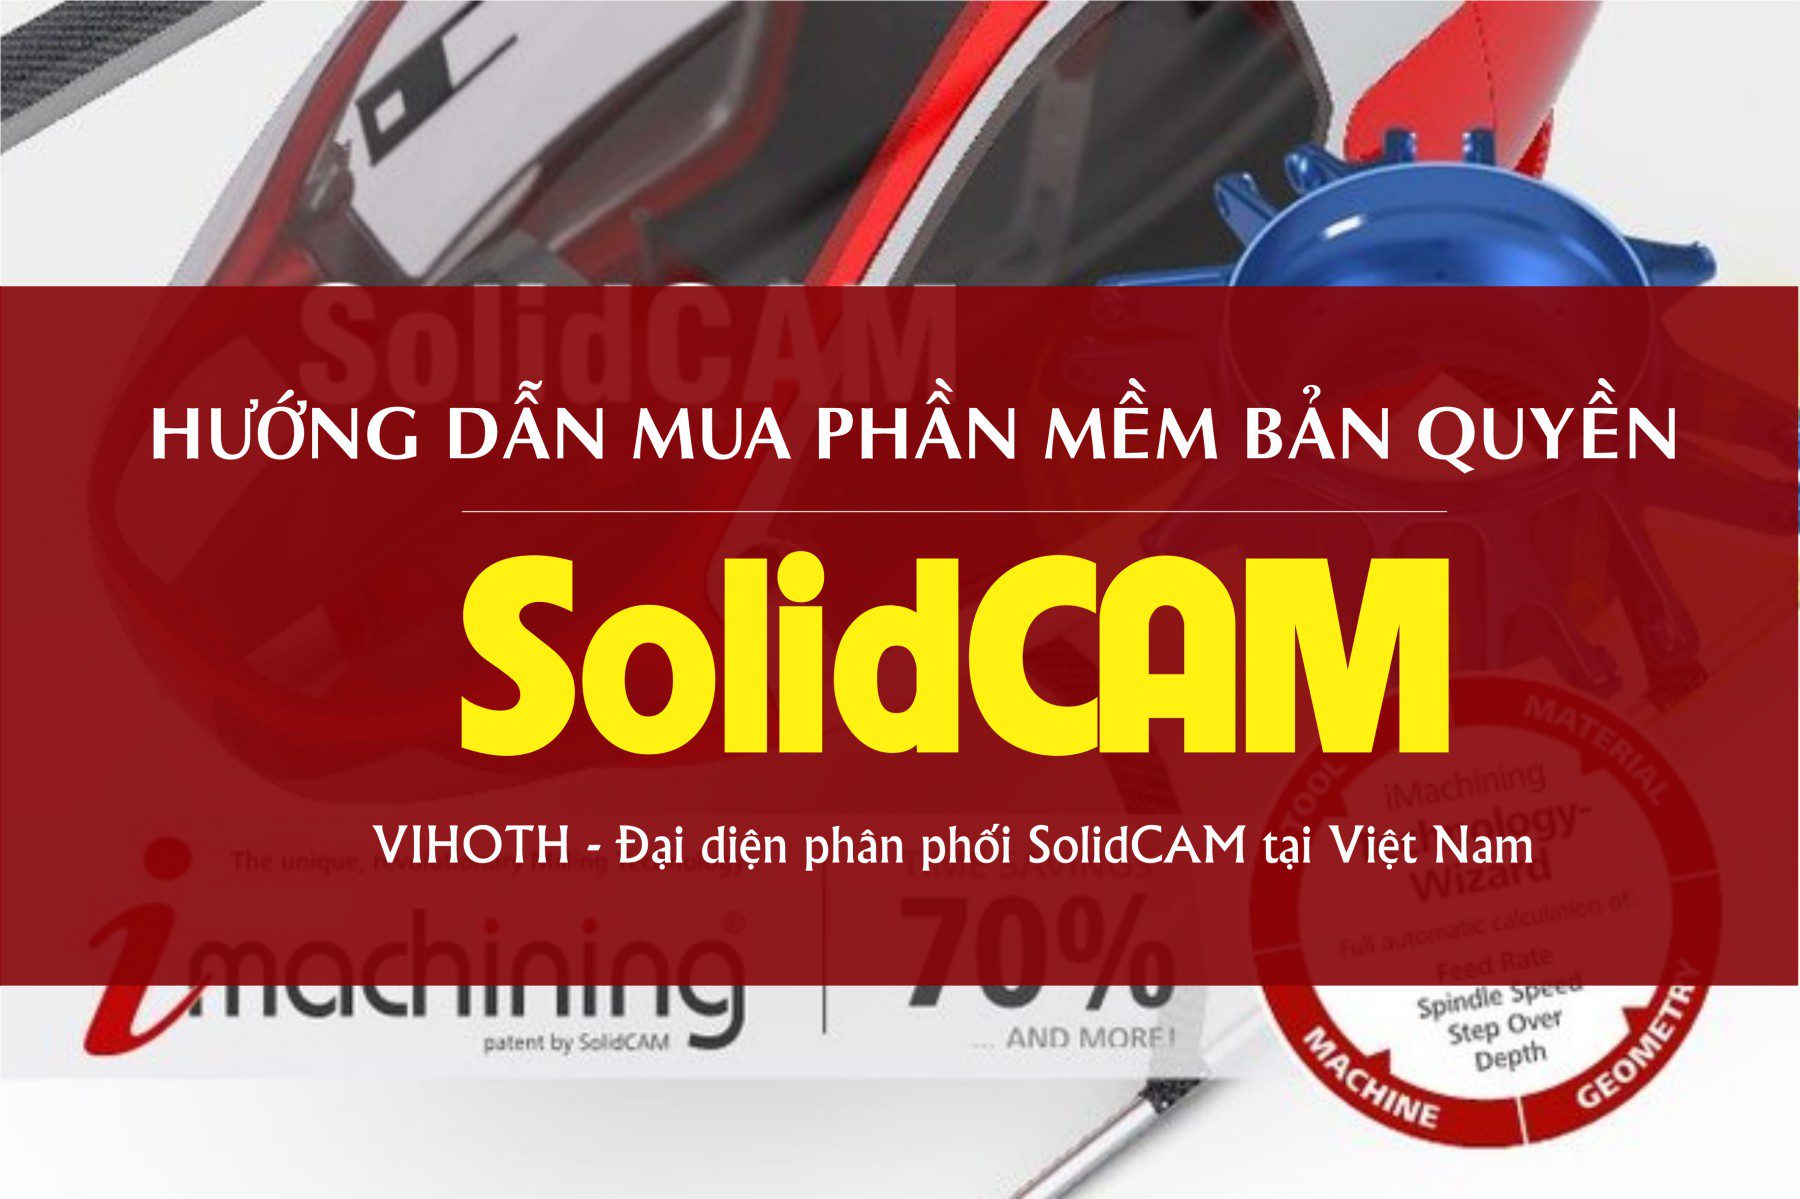 Hướng dẫn mua phần mềm SolidCAM bản quyền